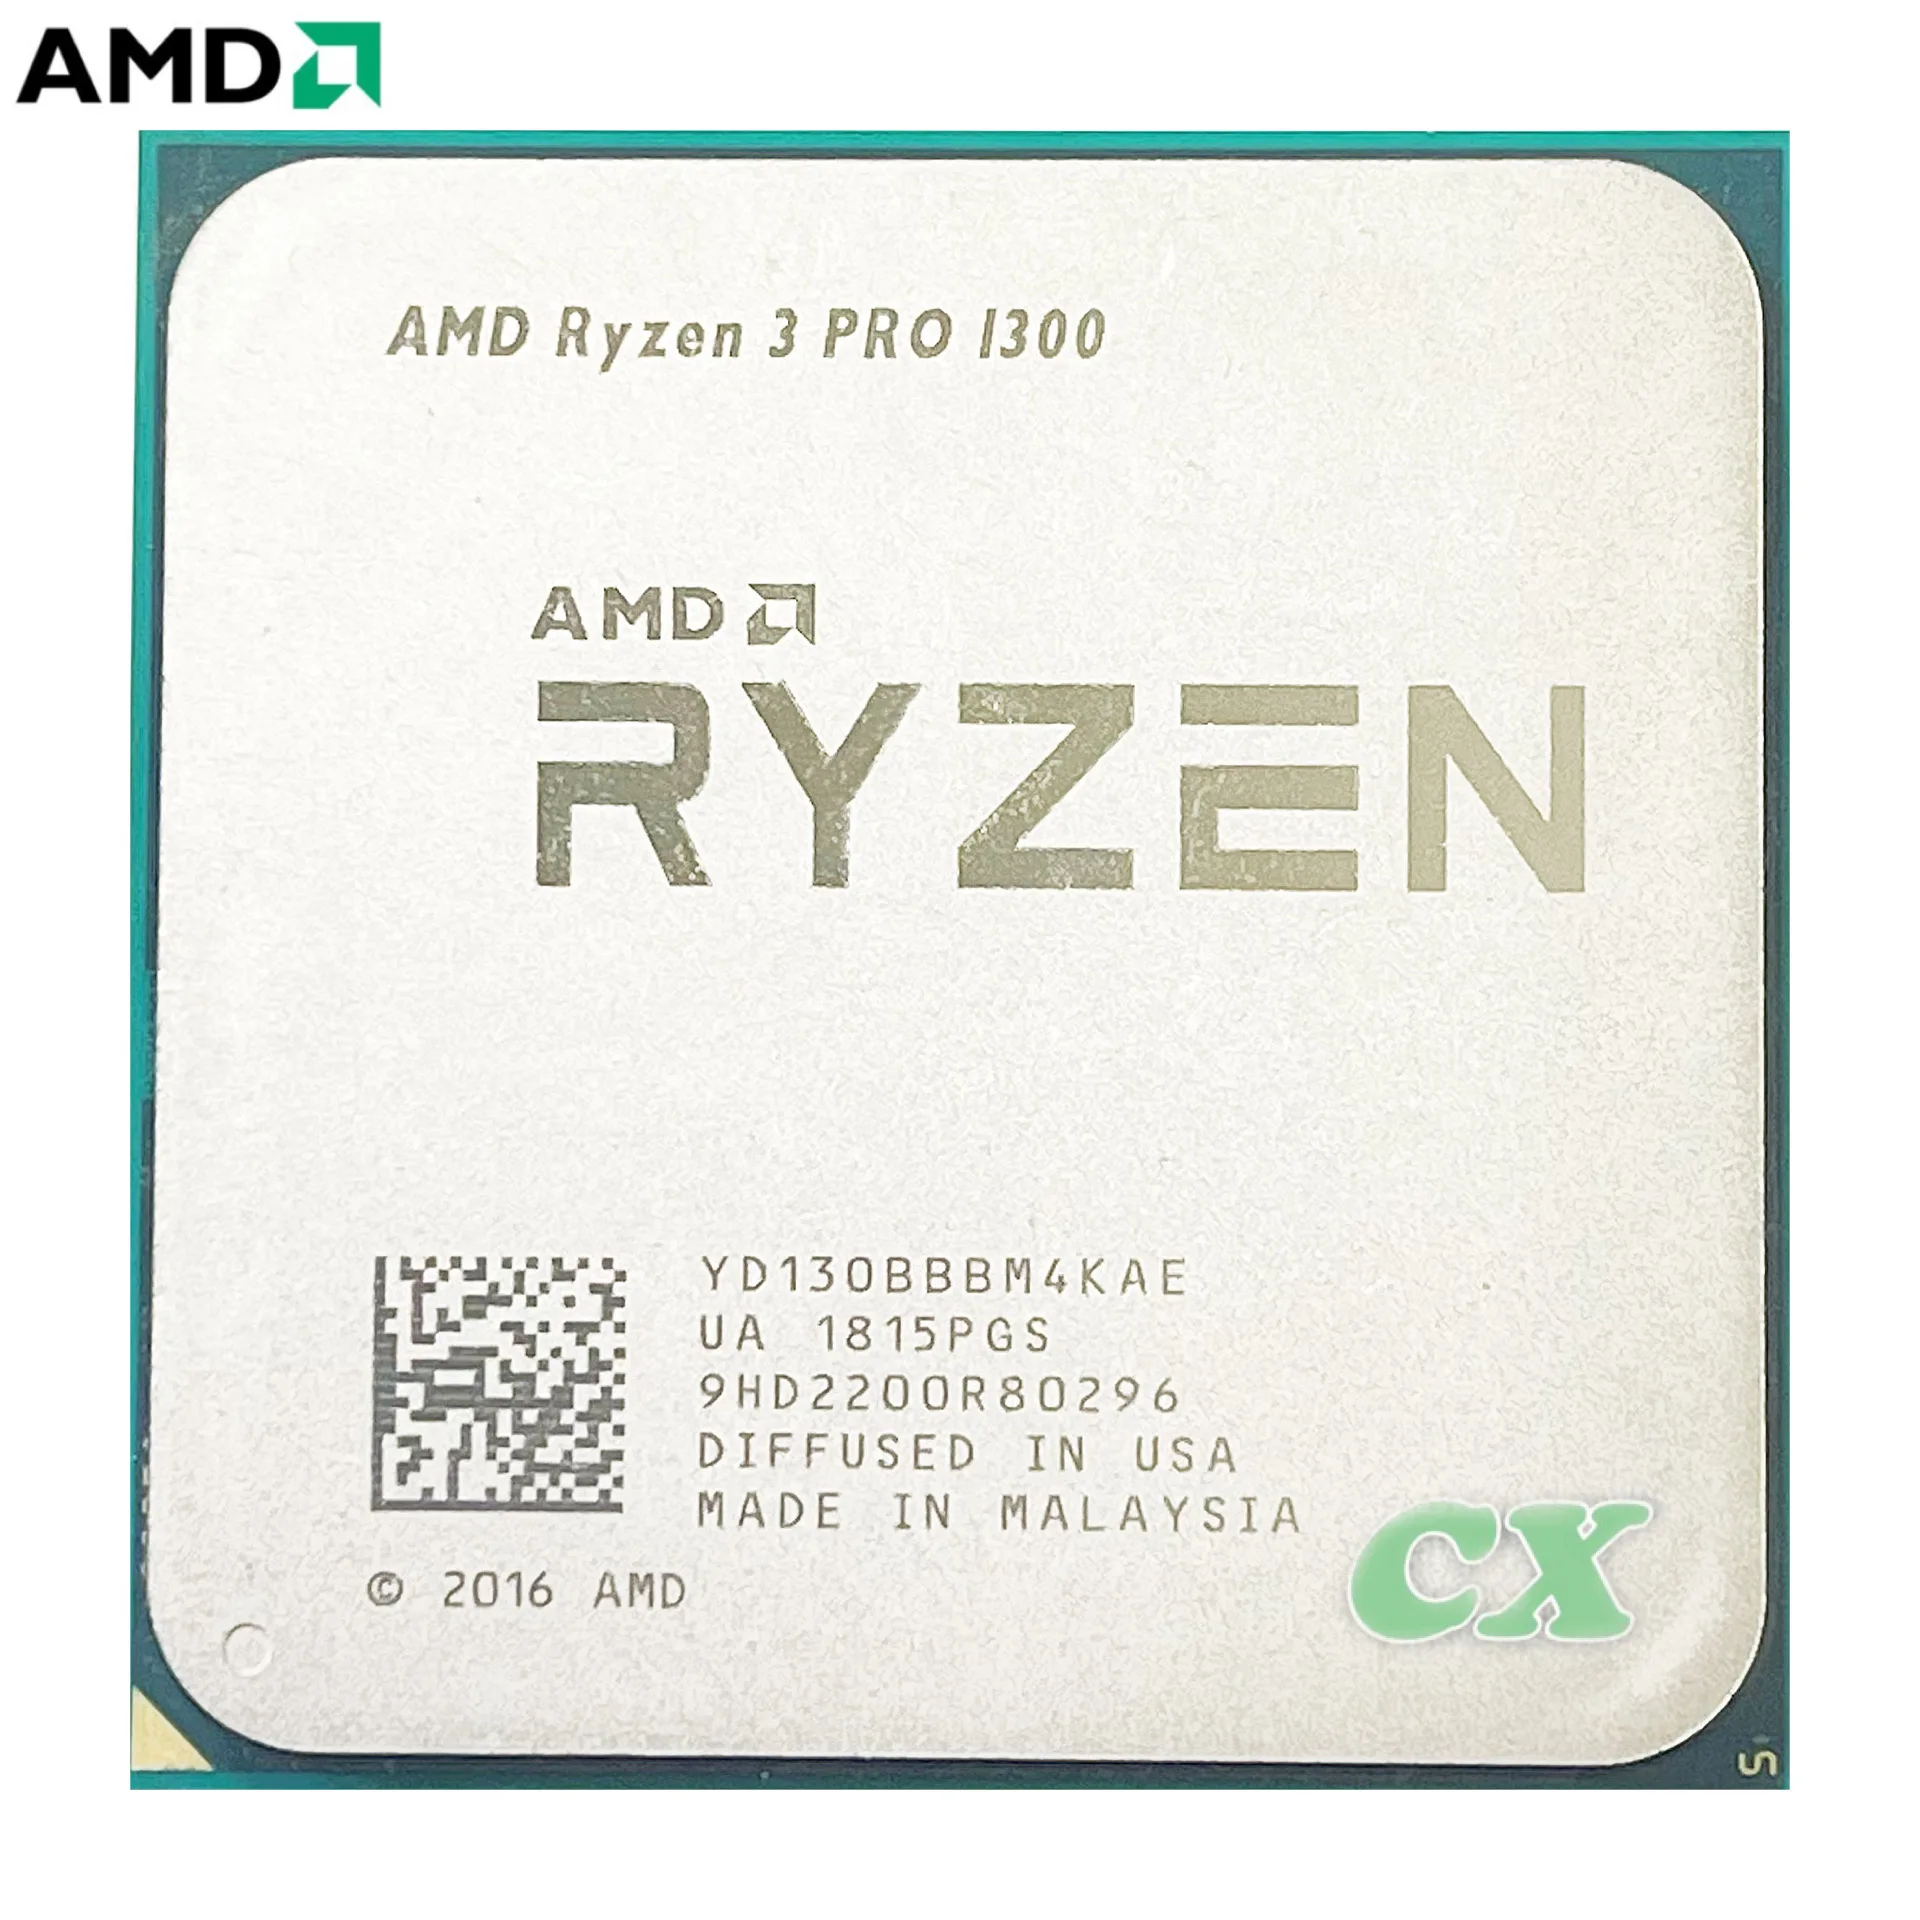 Ryzen 3 pro 1300. AMD 3 4300ge. Ryzen 7 4700g. AMD 4700s 8-Core. AMD 3 4300ge коробка.